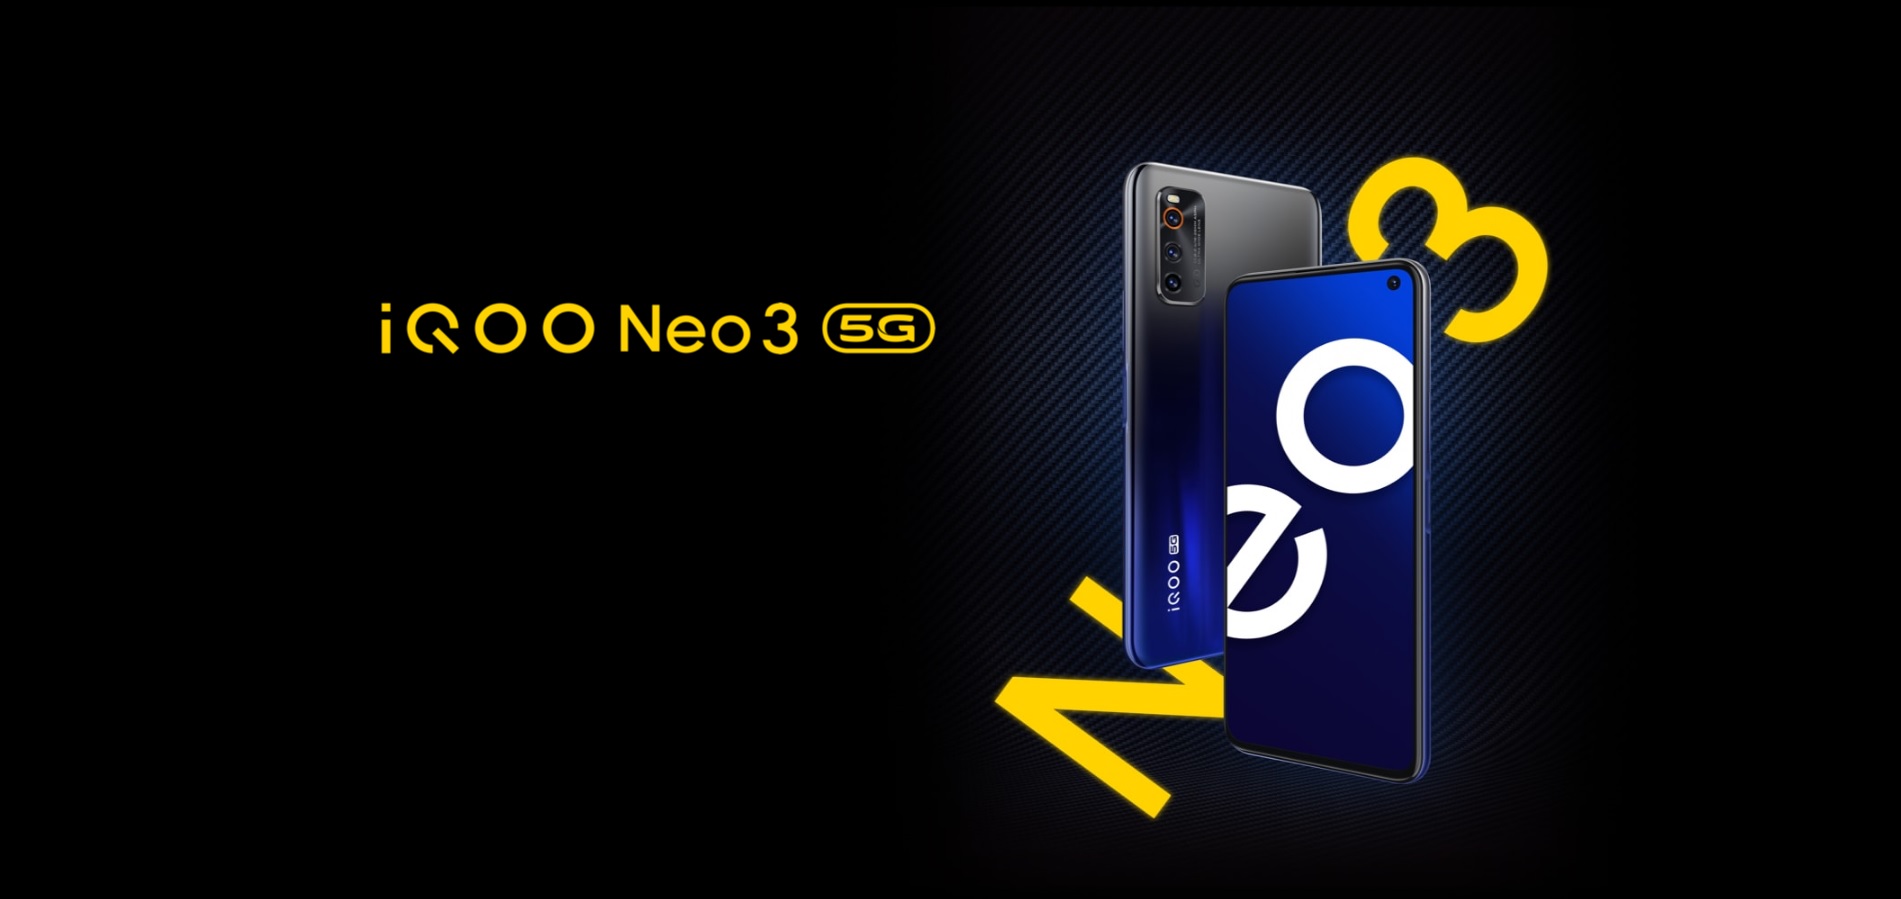 Vivo iQOO Neo 3 5G smartphone